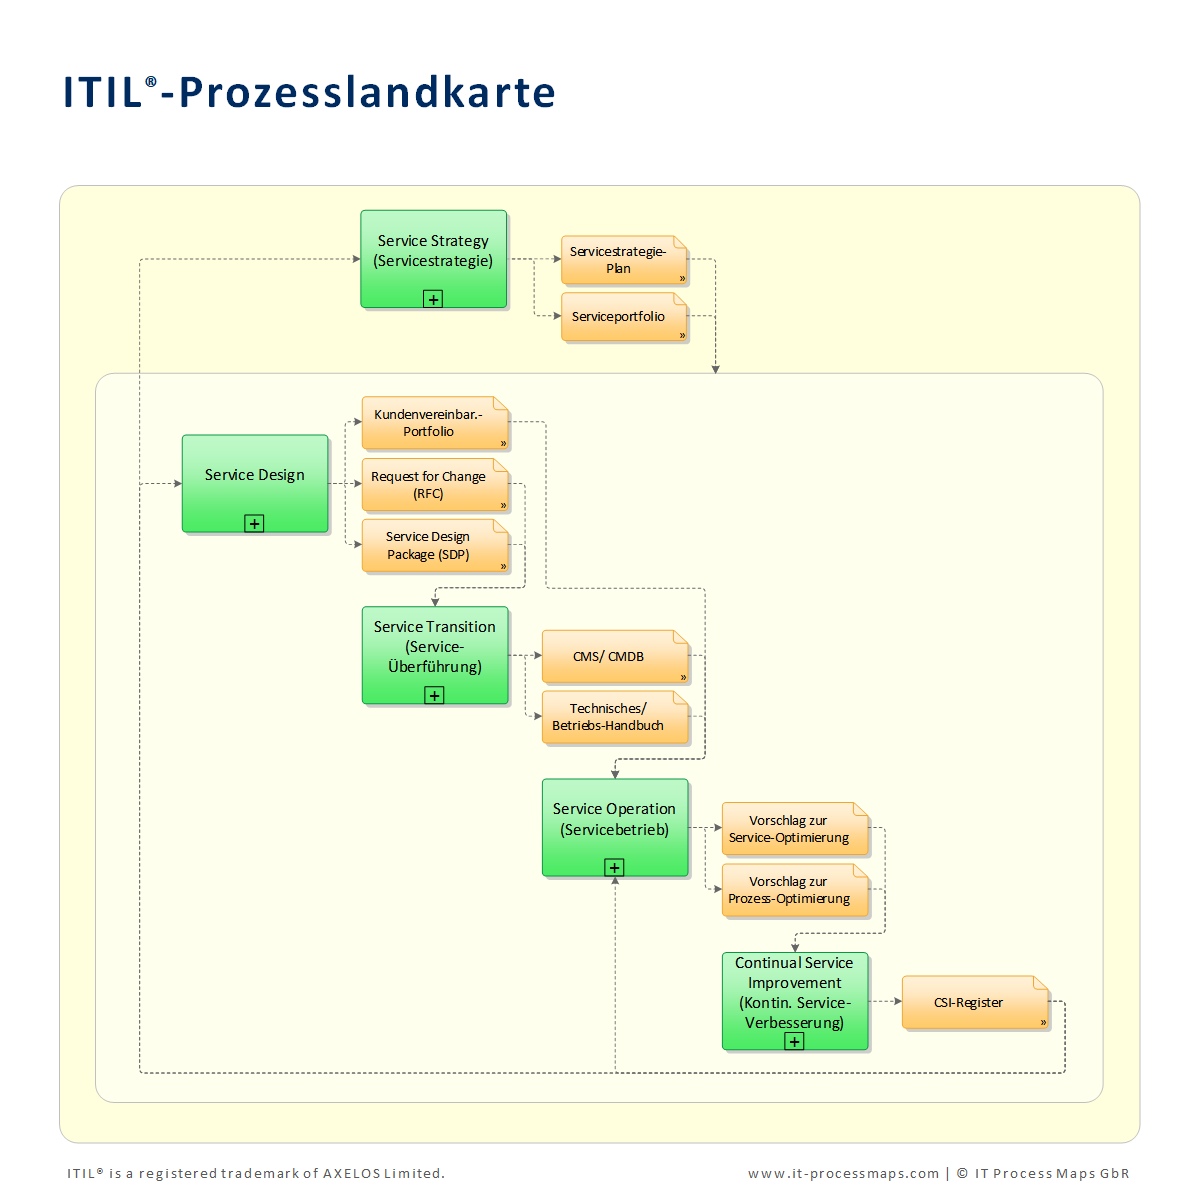 ITIL Prozessmodell